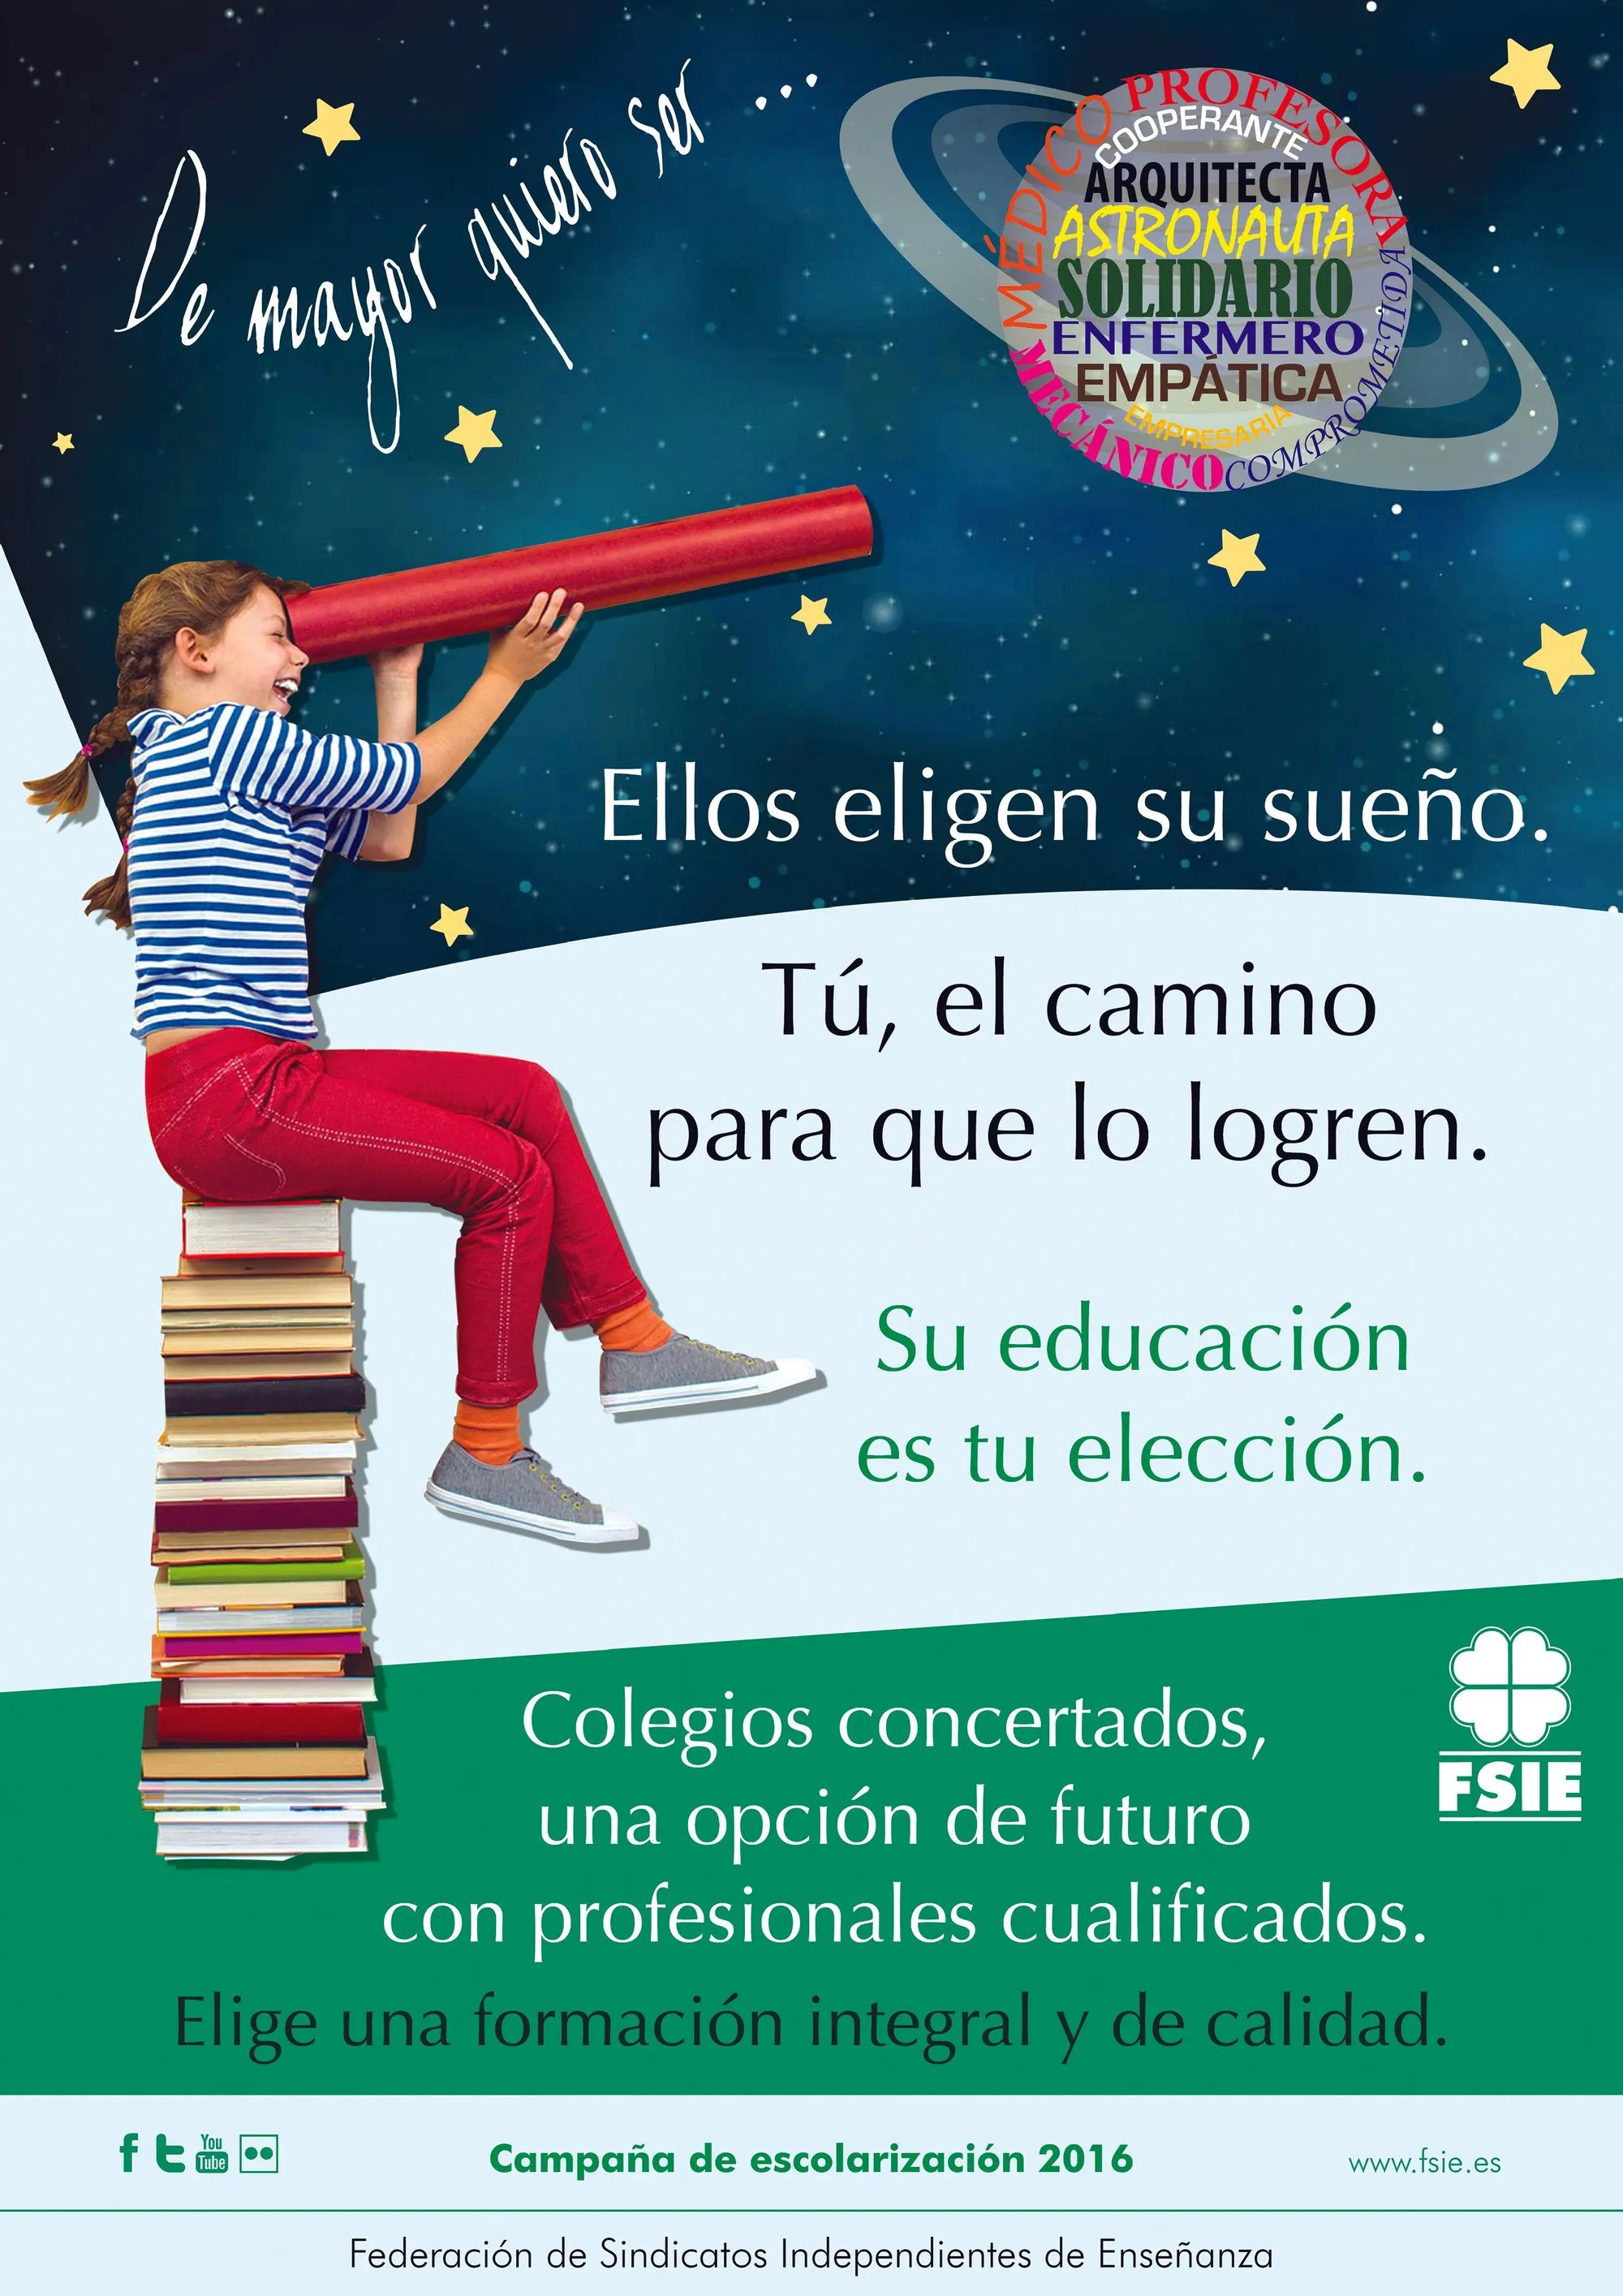 Campaña de la Federación de Sindicatos Independientes de Enseñanza, 2016.